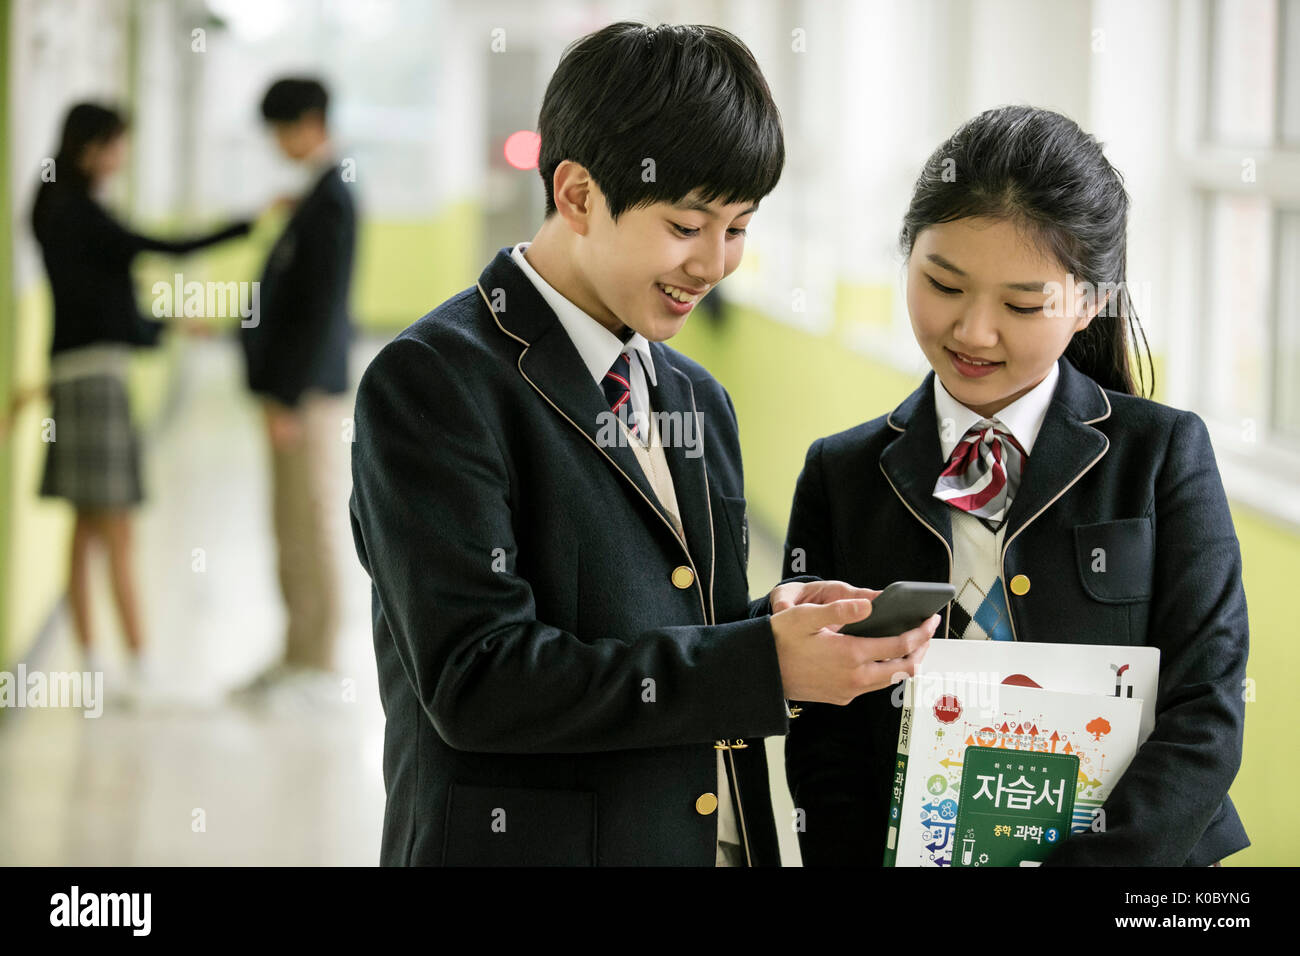 Smiling school garçon et fille de l'école partager un smartphone Banque D'Images